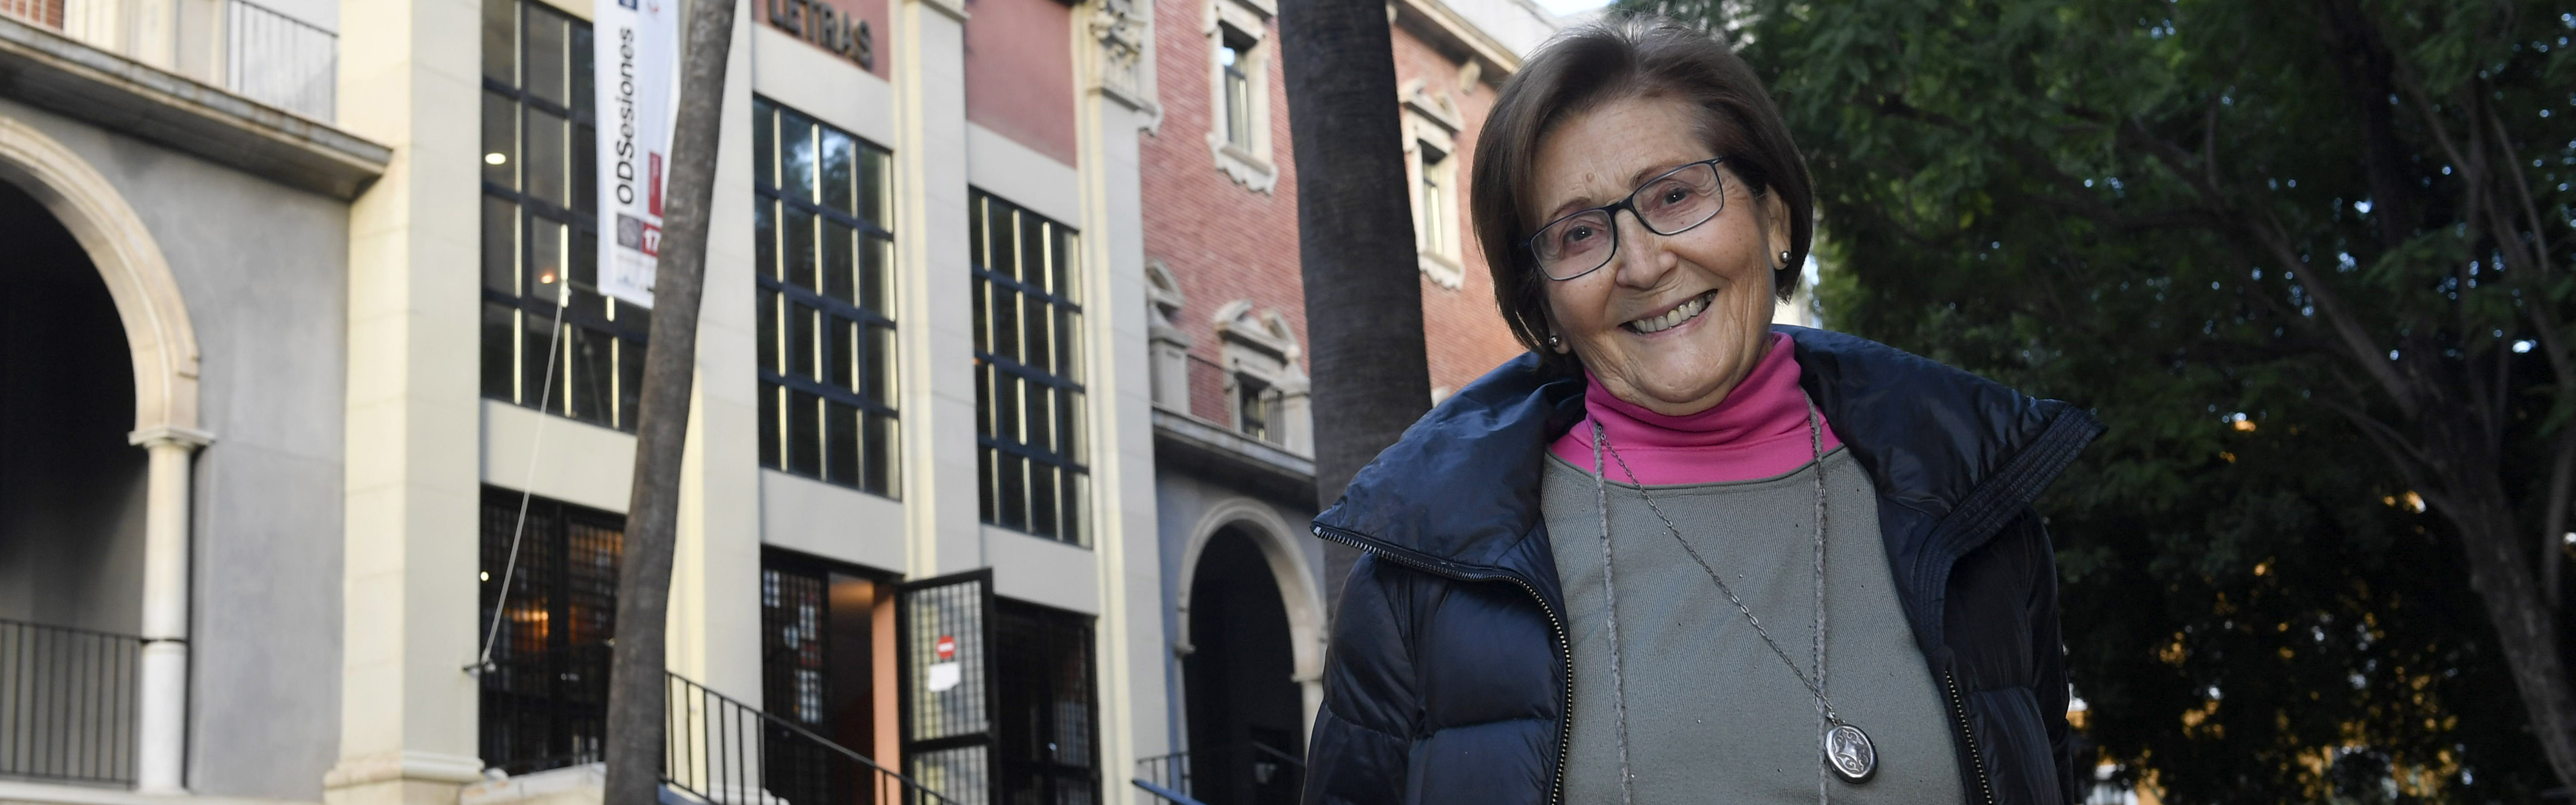 La profesora Francisca Moya del Baño, gana el premio José Loustau del Consejo Social de la UMU